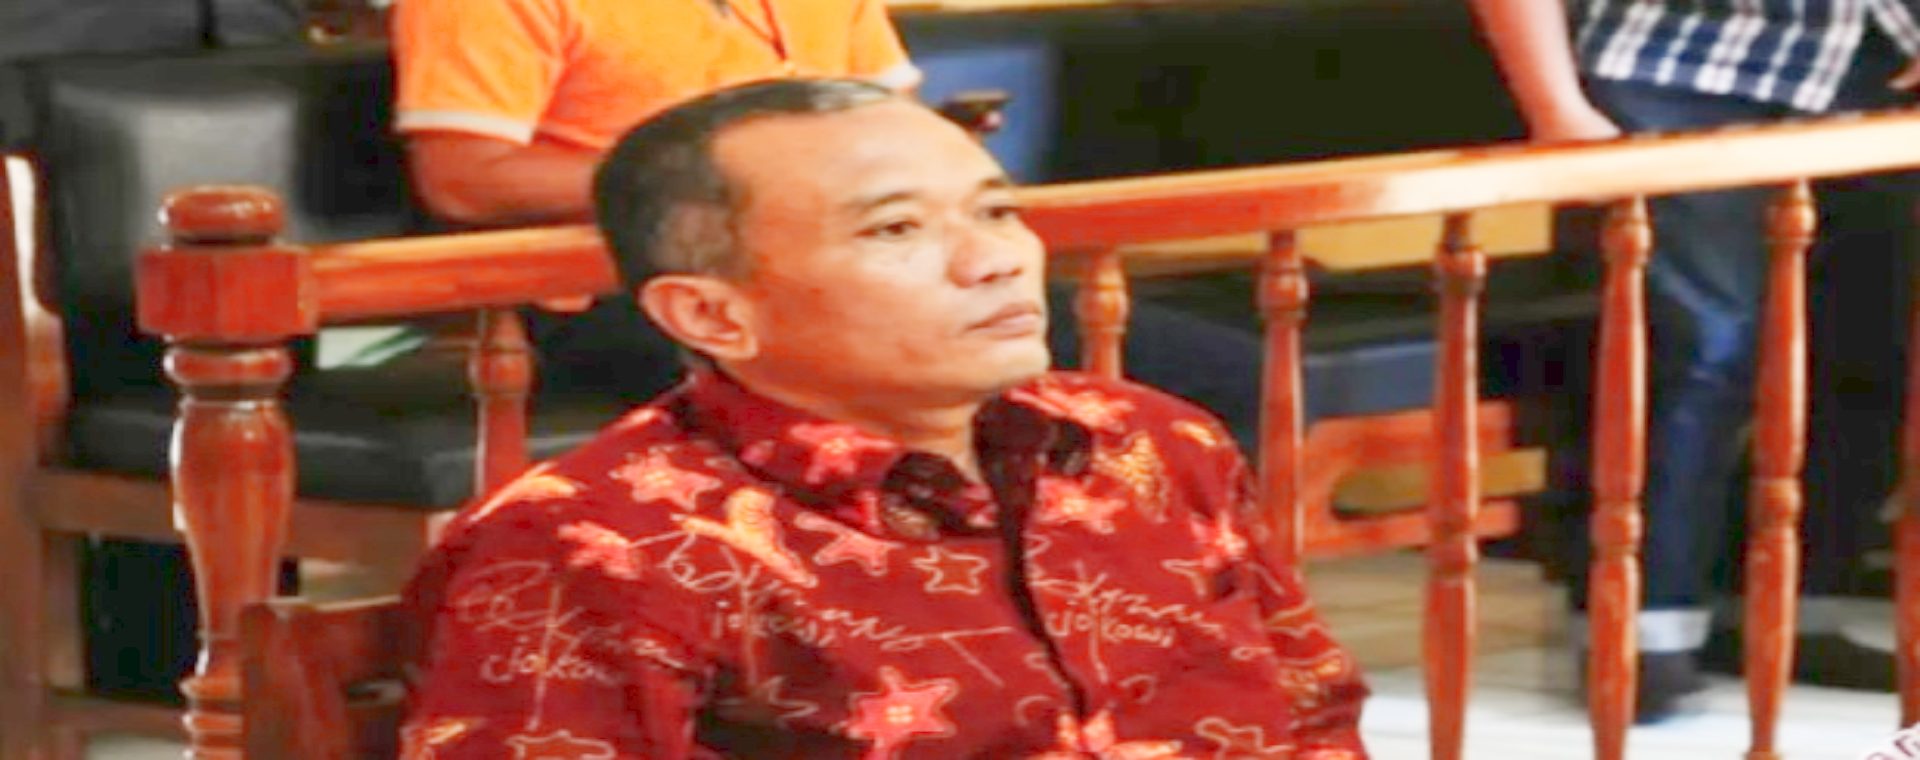 Arsip - Terdakwa kasus penulis buku Jokowi Undercover Bambang Tri Mulyono, menjalani sidang perdana di Pengadilan Negeri Blora, Jawa Tengah, Senin (20/3/2017). Sidang tersebut mengagendakan pembacaan dakwaan dari Jaksa Penuntut Umum (JPU).